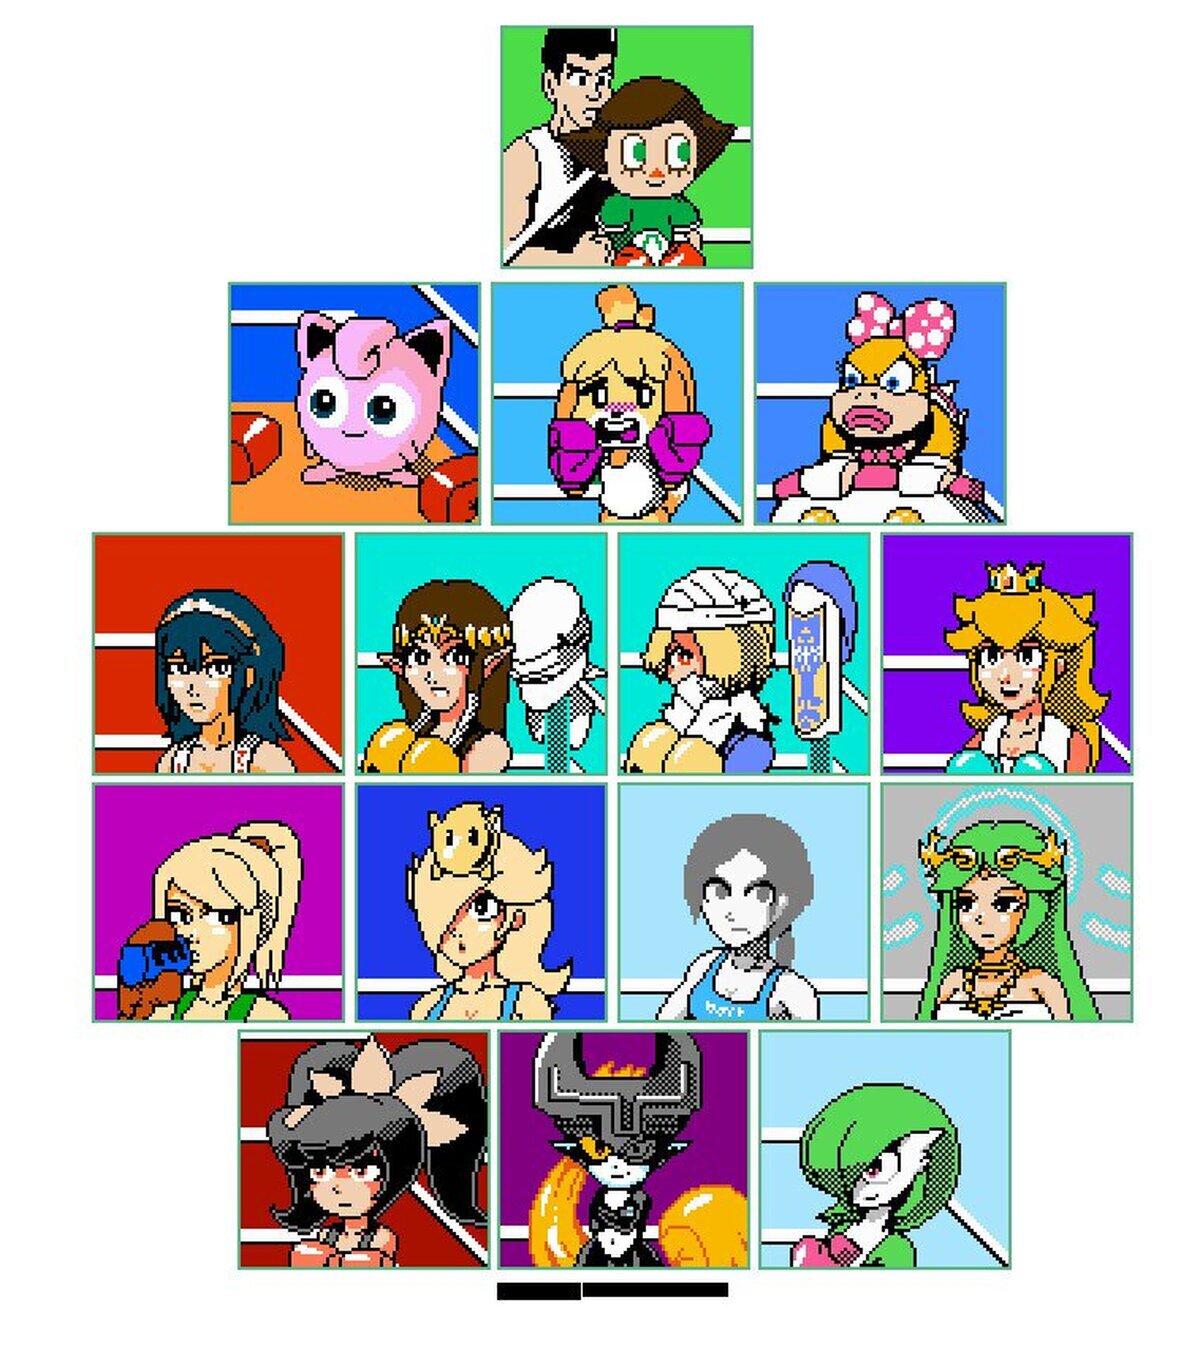 Si las chicas de Nintendo apareciesen en el Punch Out! de NES